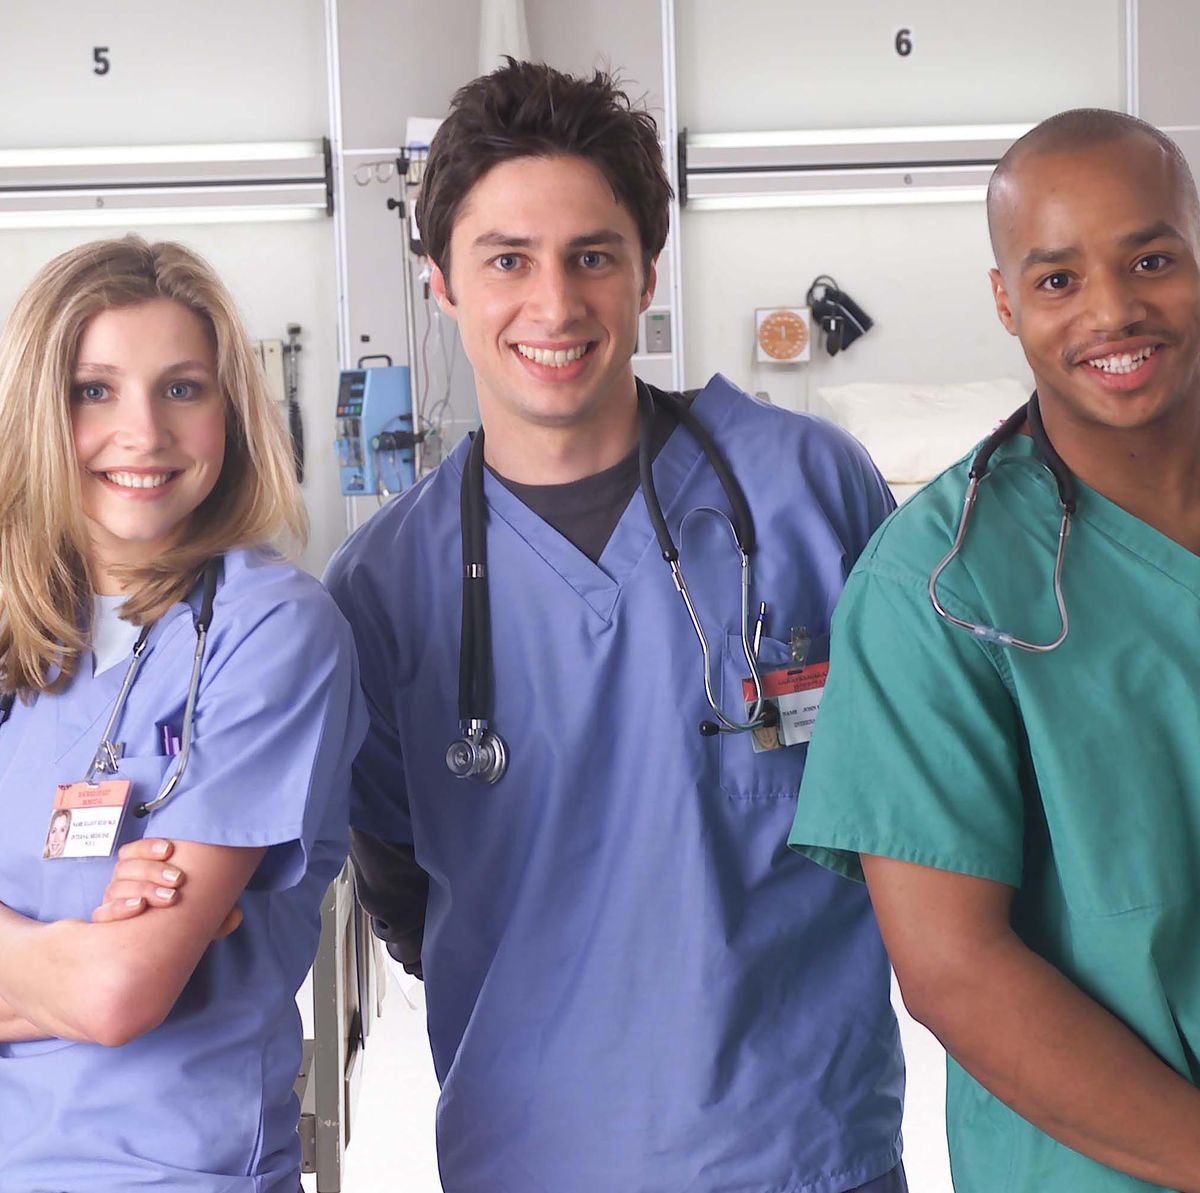 Cast of NBC TV Show "Scrubs"